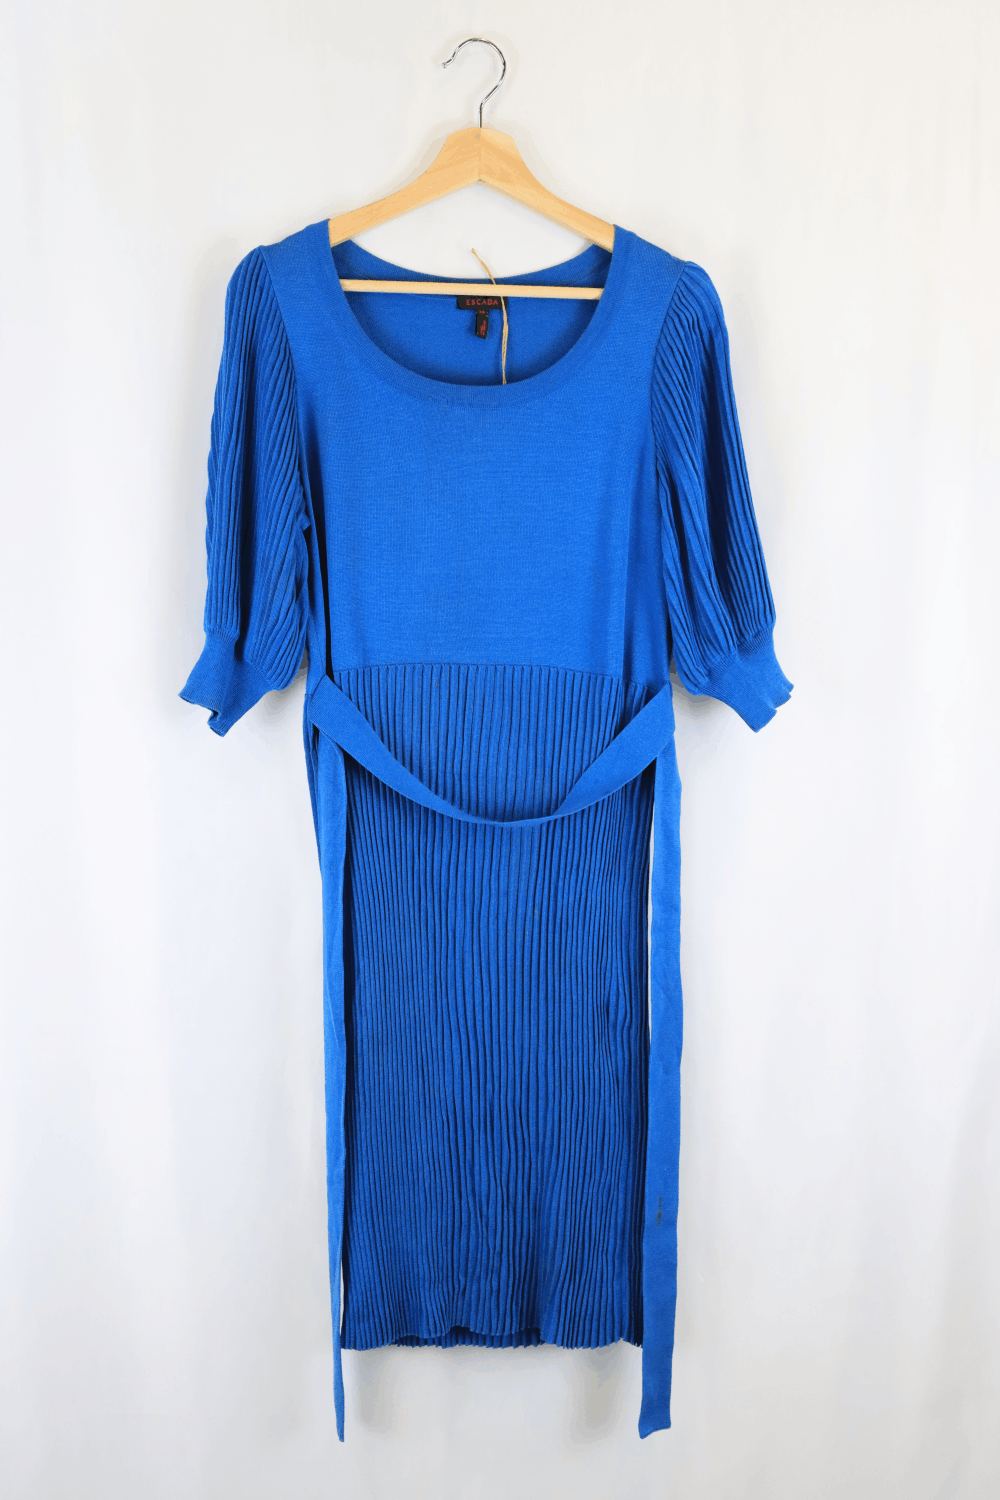 Escanda Blue Dress 38 (12-14)